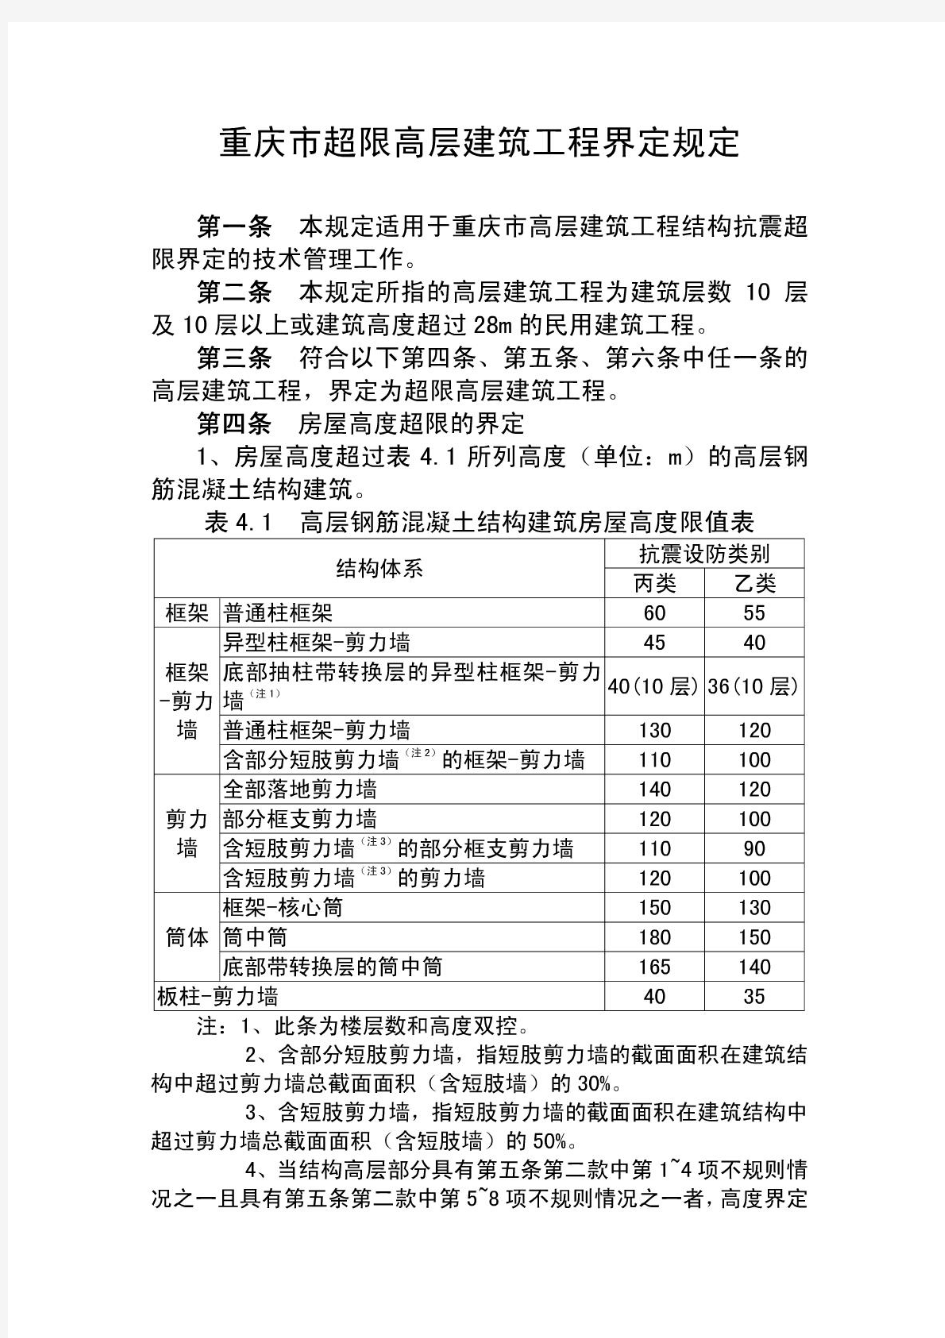 重庆市超限高层建筑工程界定规定